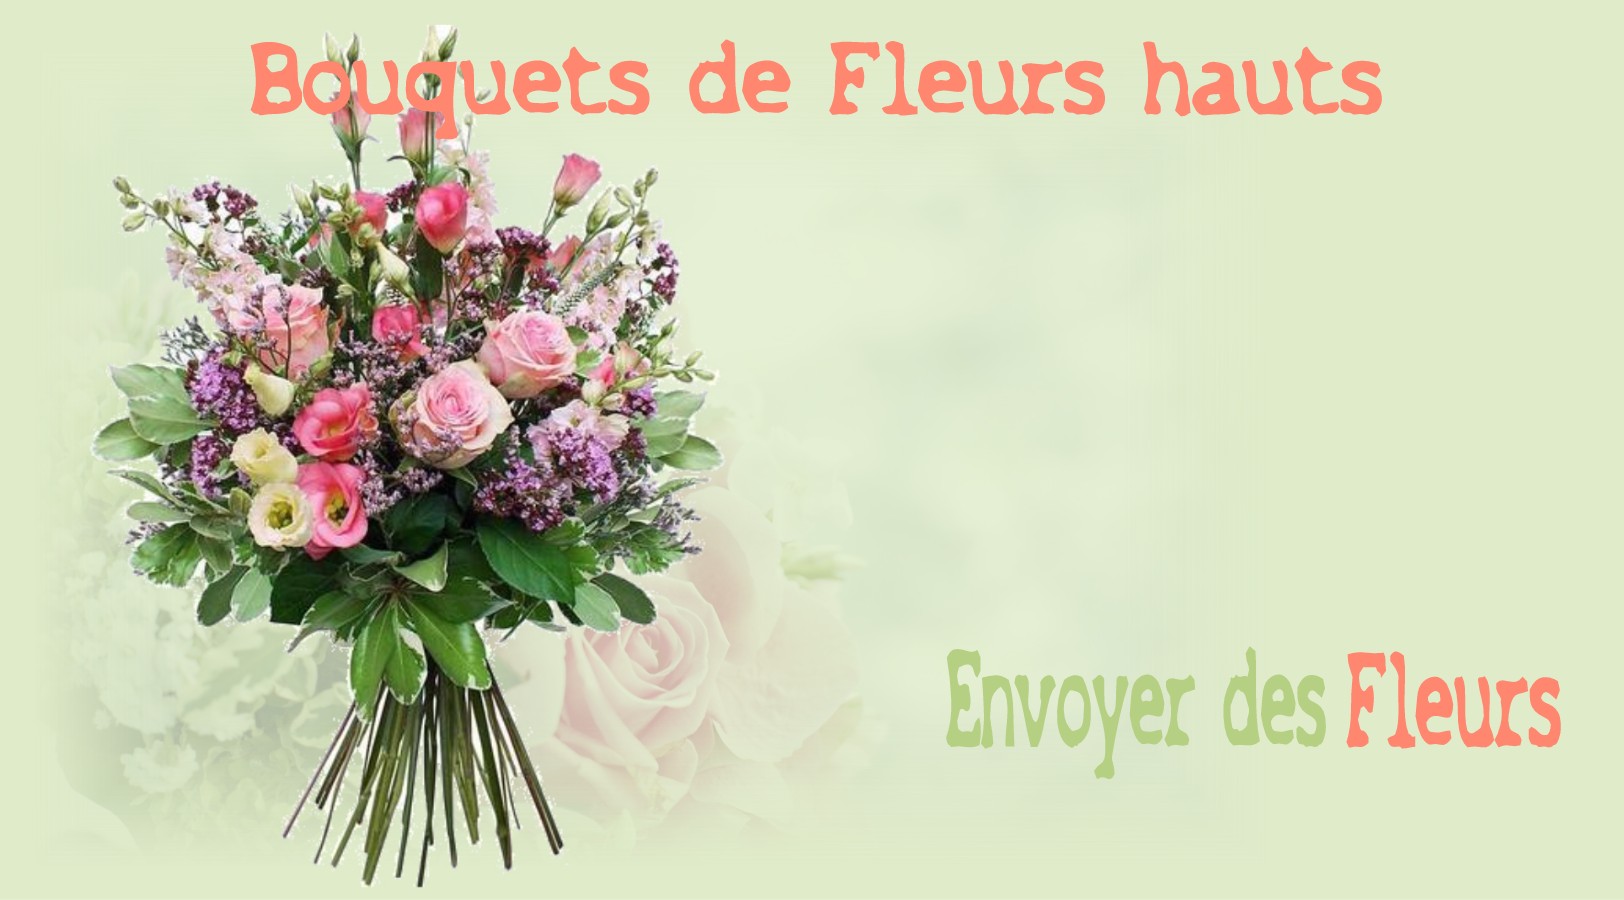 LES BOUQUETS HAUTS - FLEURISTE STRASBOURG (67) - ENVOYER DES FLEURS